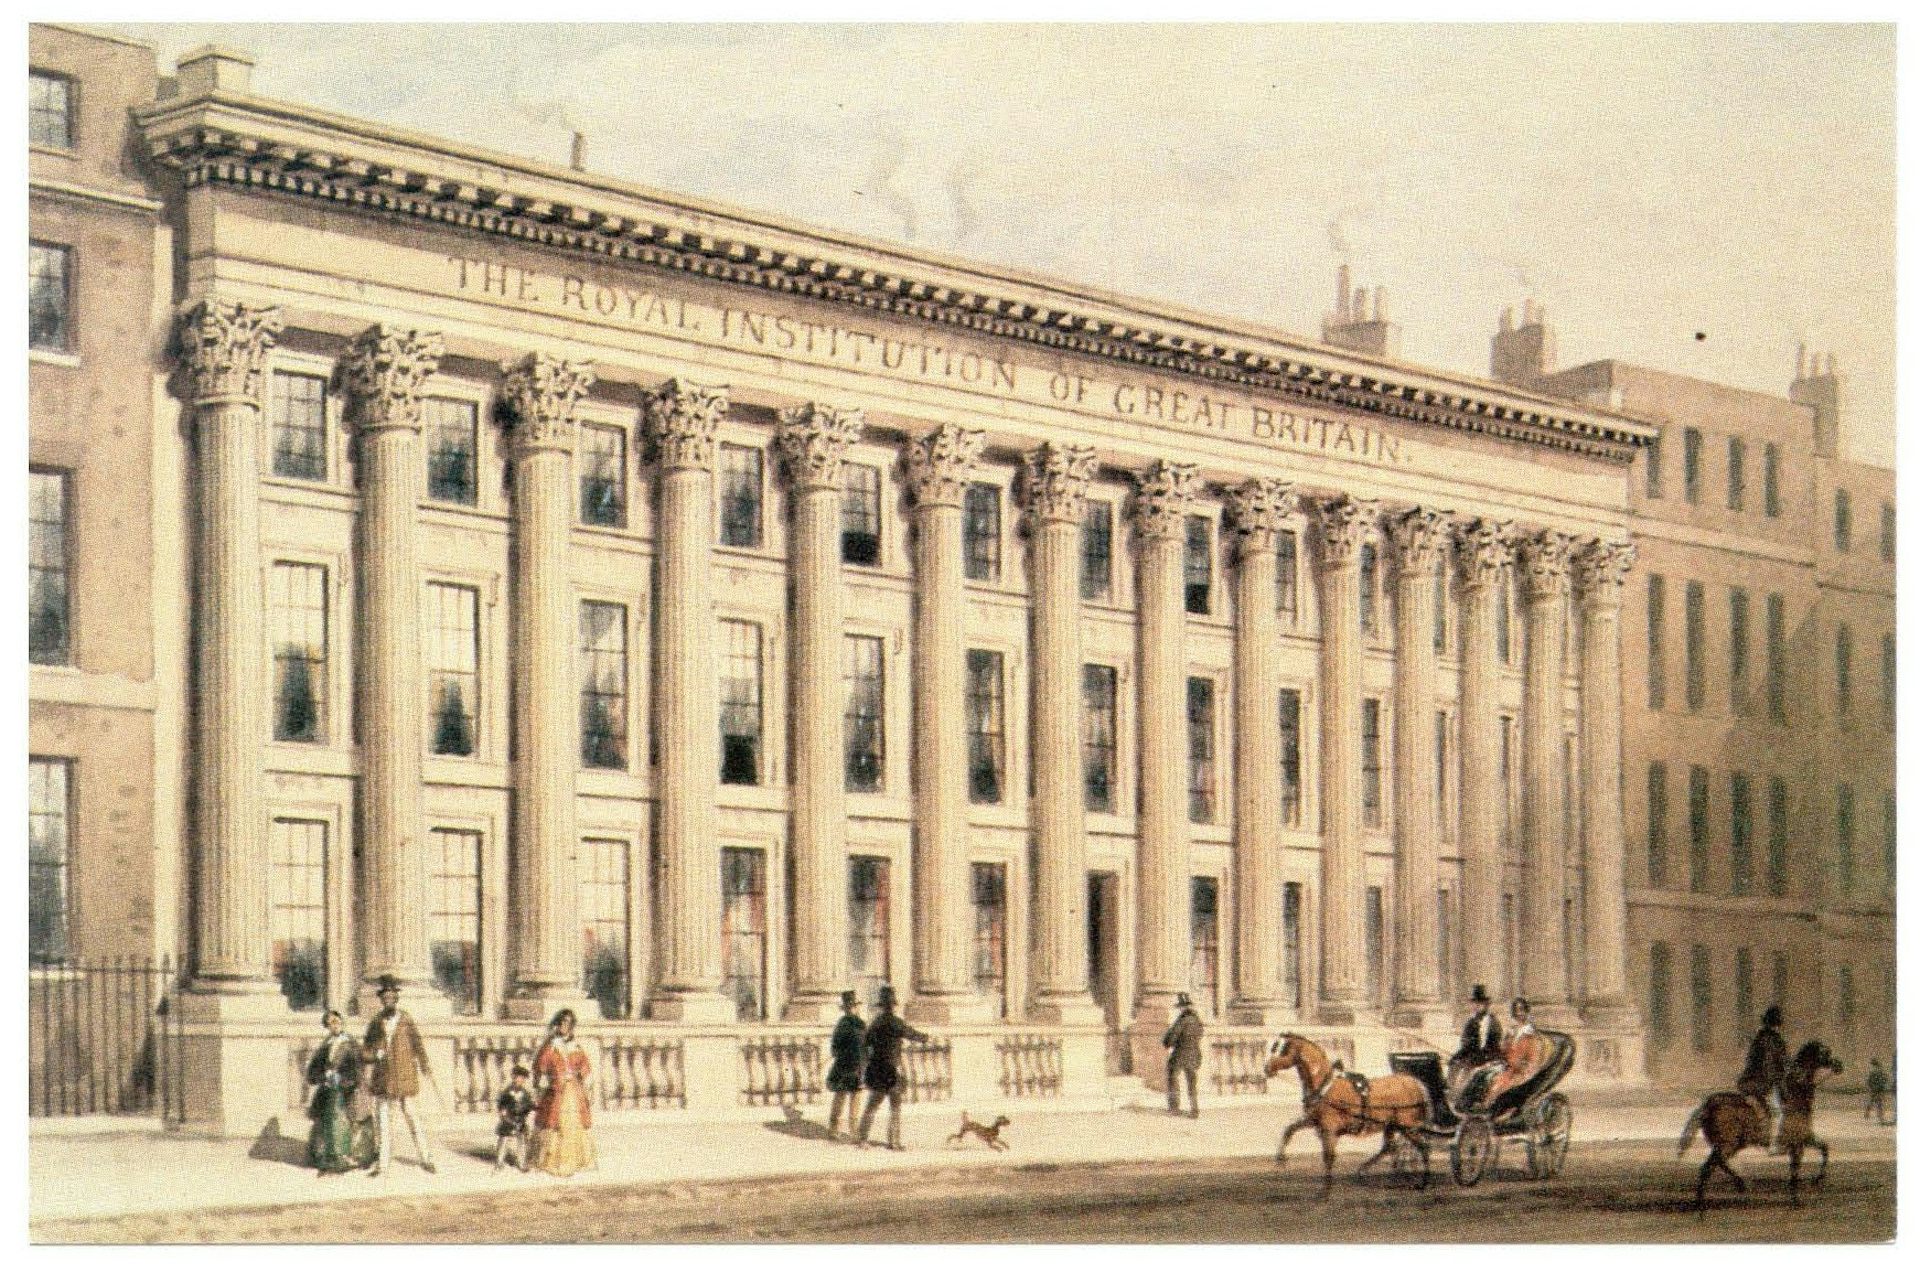 målning av den neoklassiska Royal Institution building i London.